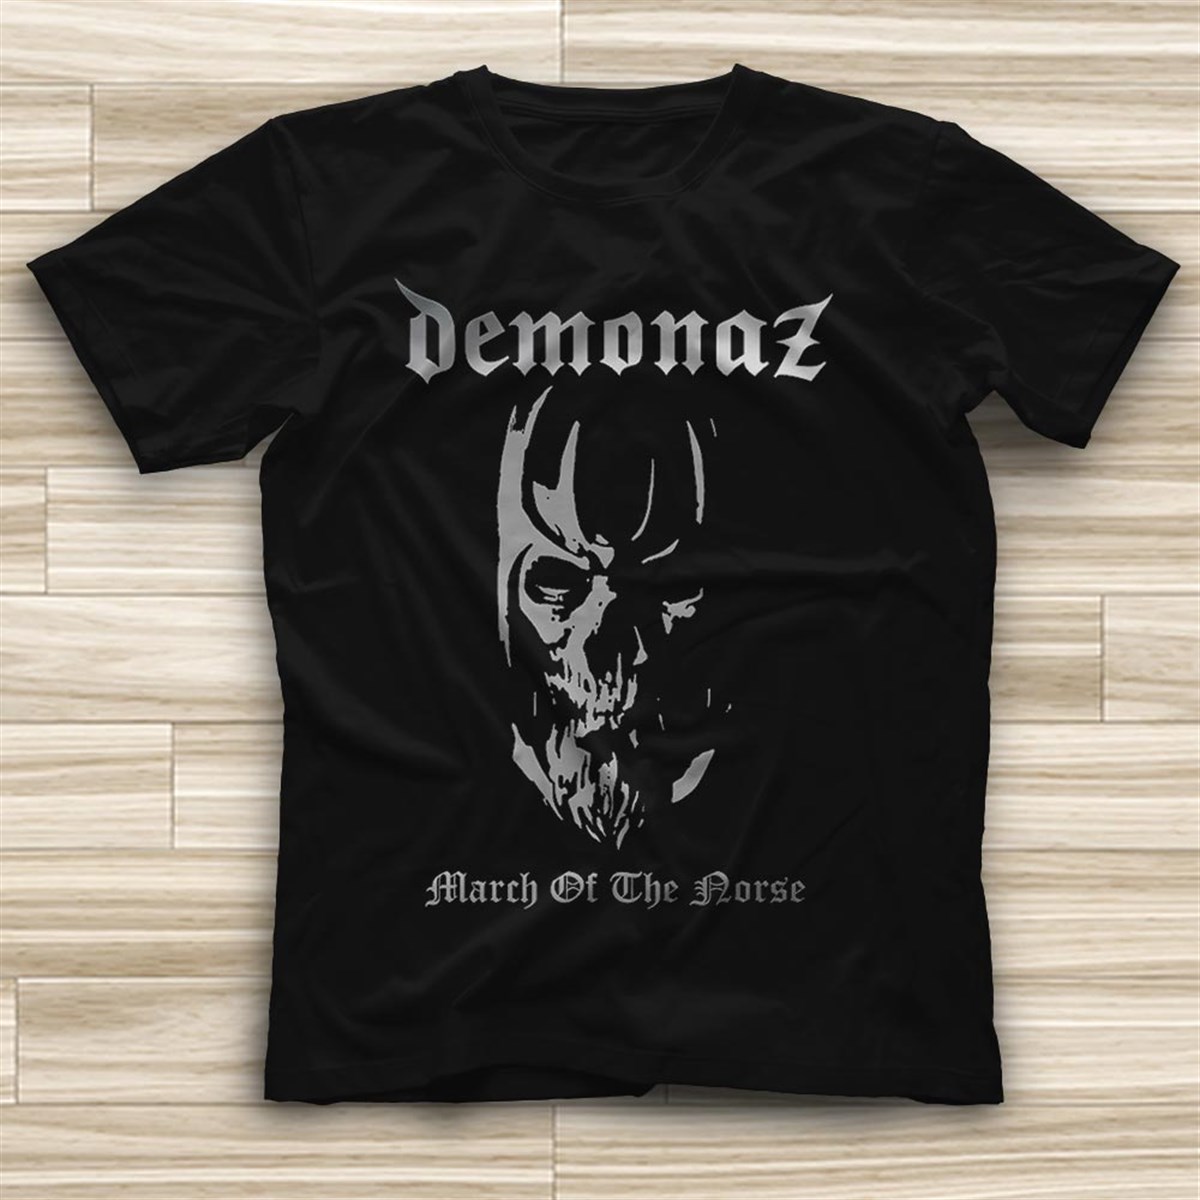 Demonaz T shirt, Music Band ,Rock Tshirt 01/